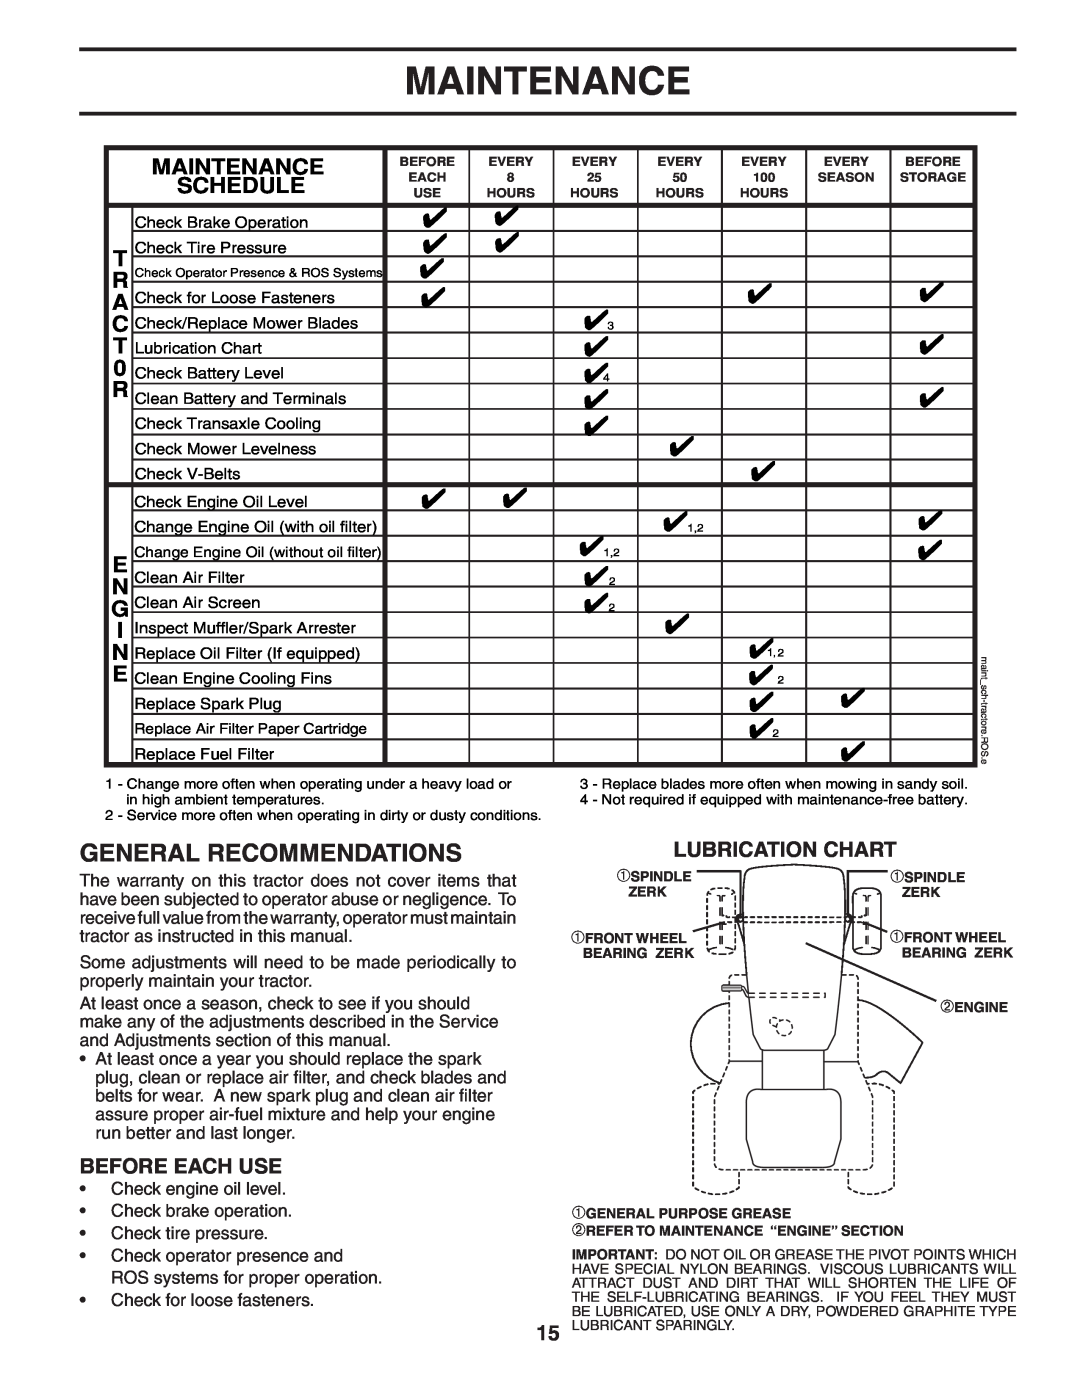 Poulan 405385 manual Maintenance, Lubrication Chart 